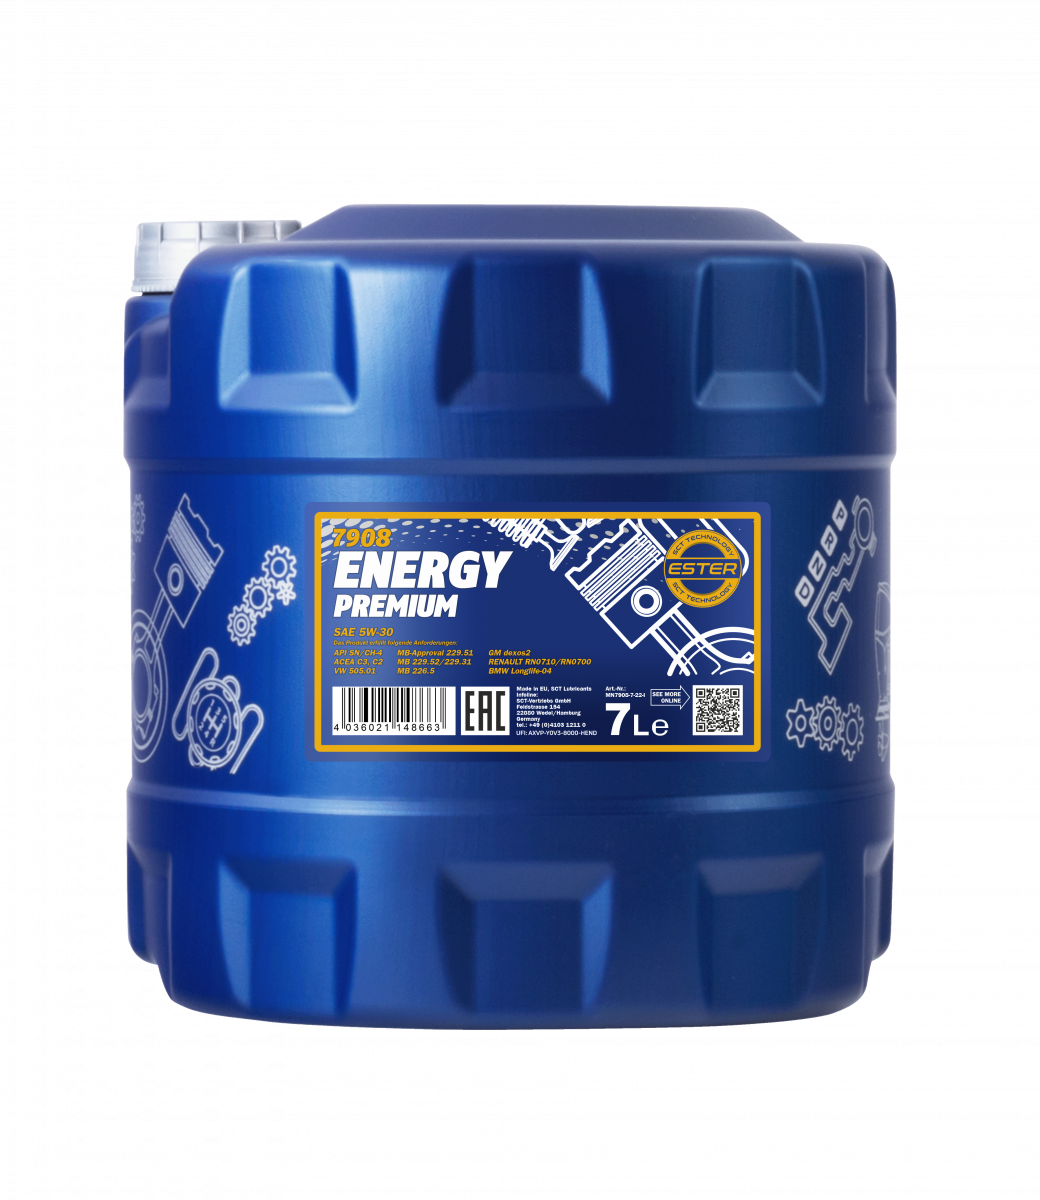 Mannol 5w30 Energy premium 1 Litro. – Custom Garage Spa